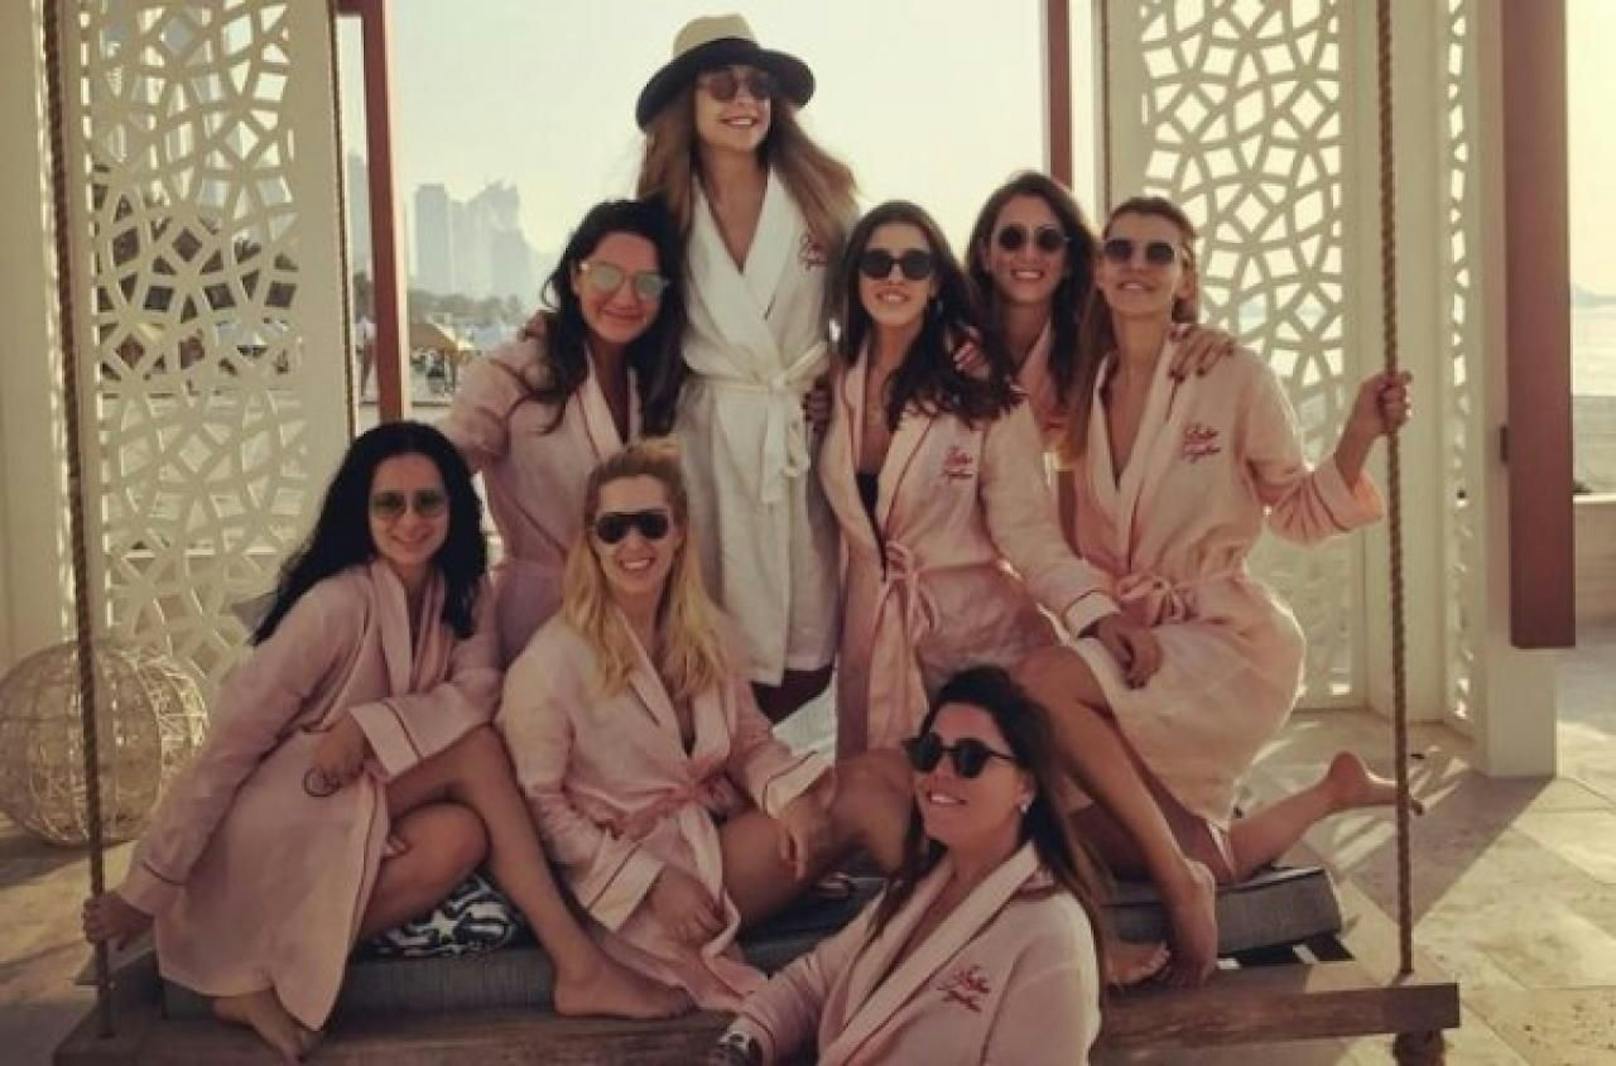 Die acht Passagiere sollen an einer Party gewesen sein: Bild vom Junggesellinnen-Abschied in Dubai.